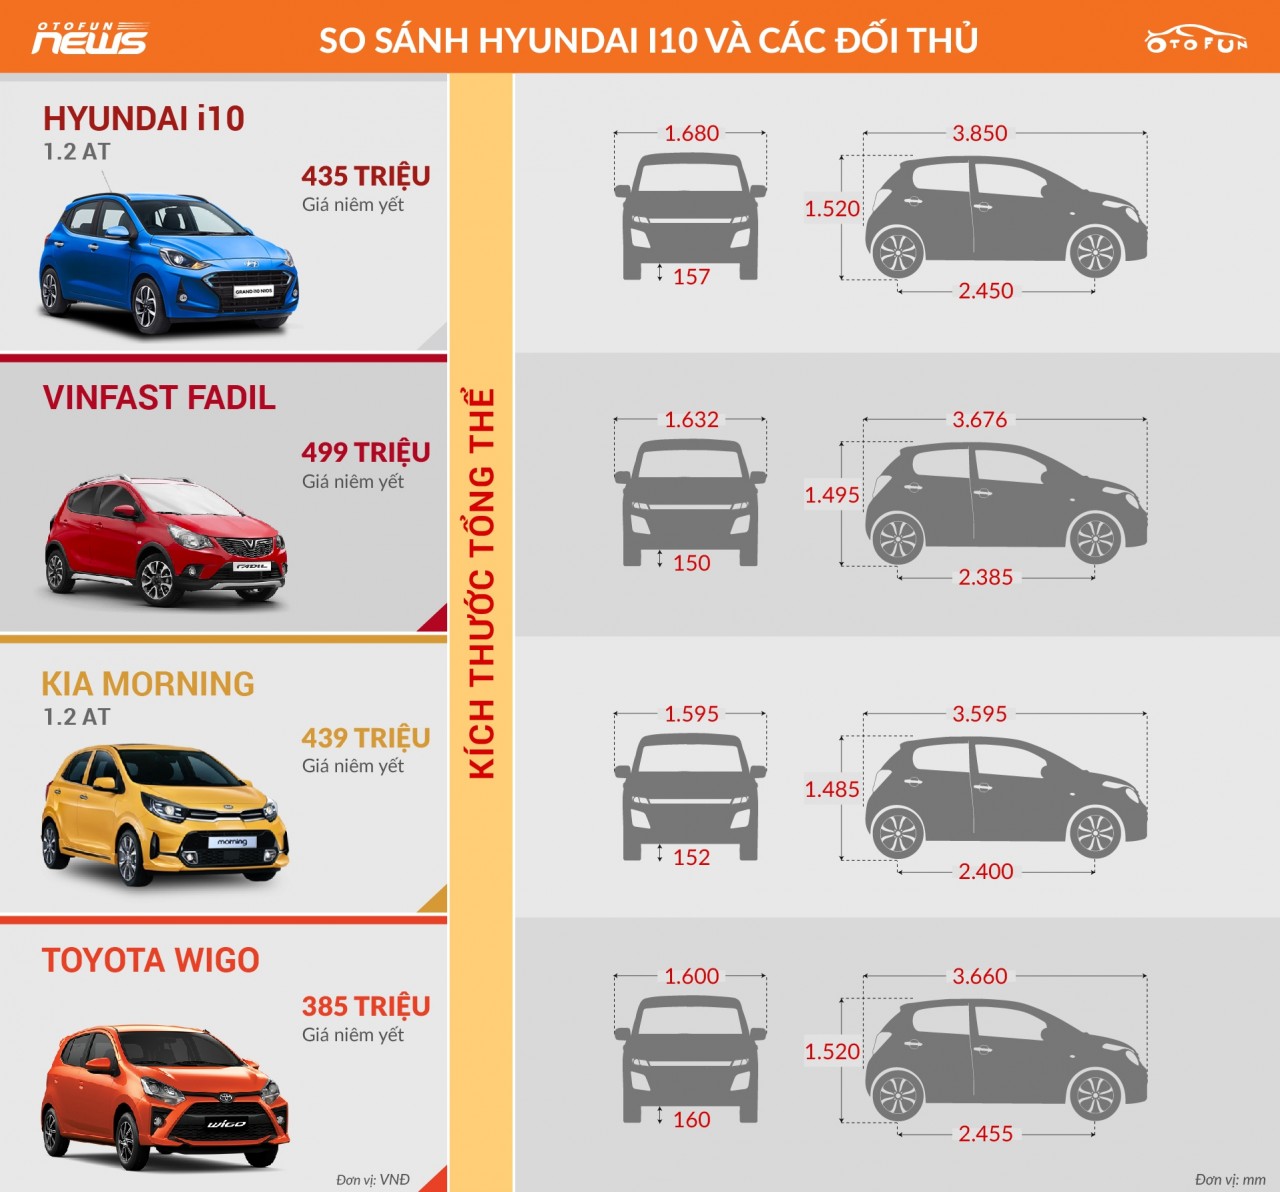 [Infographic] So sánh Hyundai i10 2021 và đối thủ cùng phân khúc